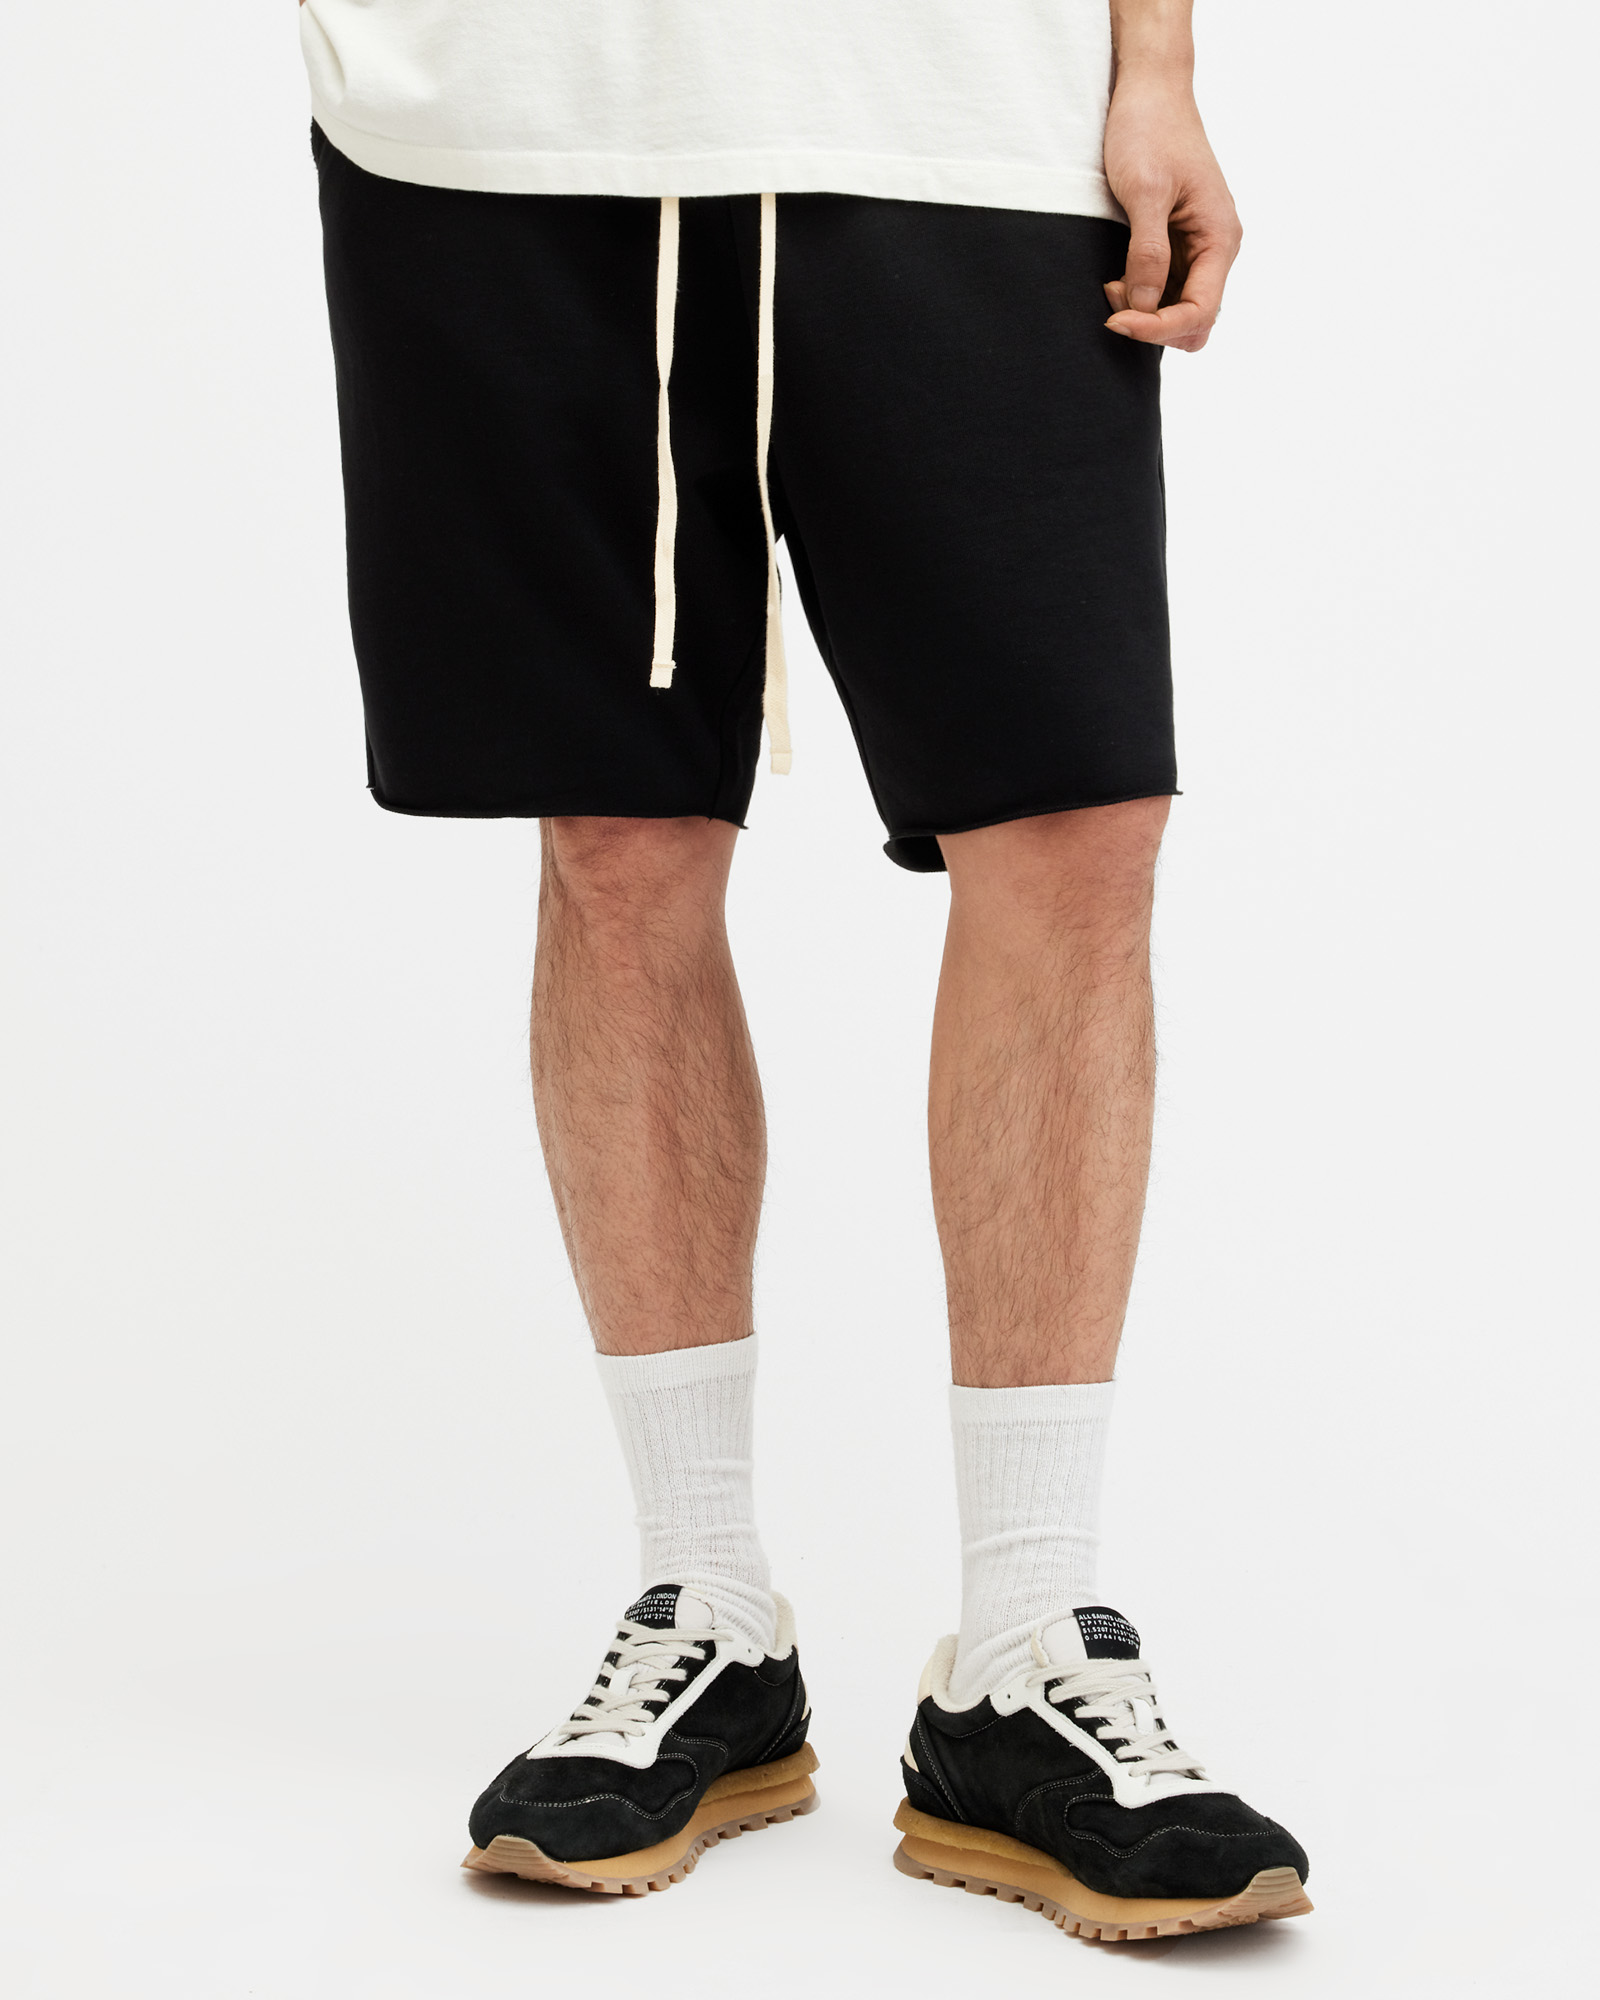 AllSaints Men's Cotton Relaxed Fit Helix Sweat Shorts, Black, Size: S